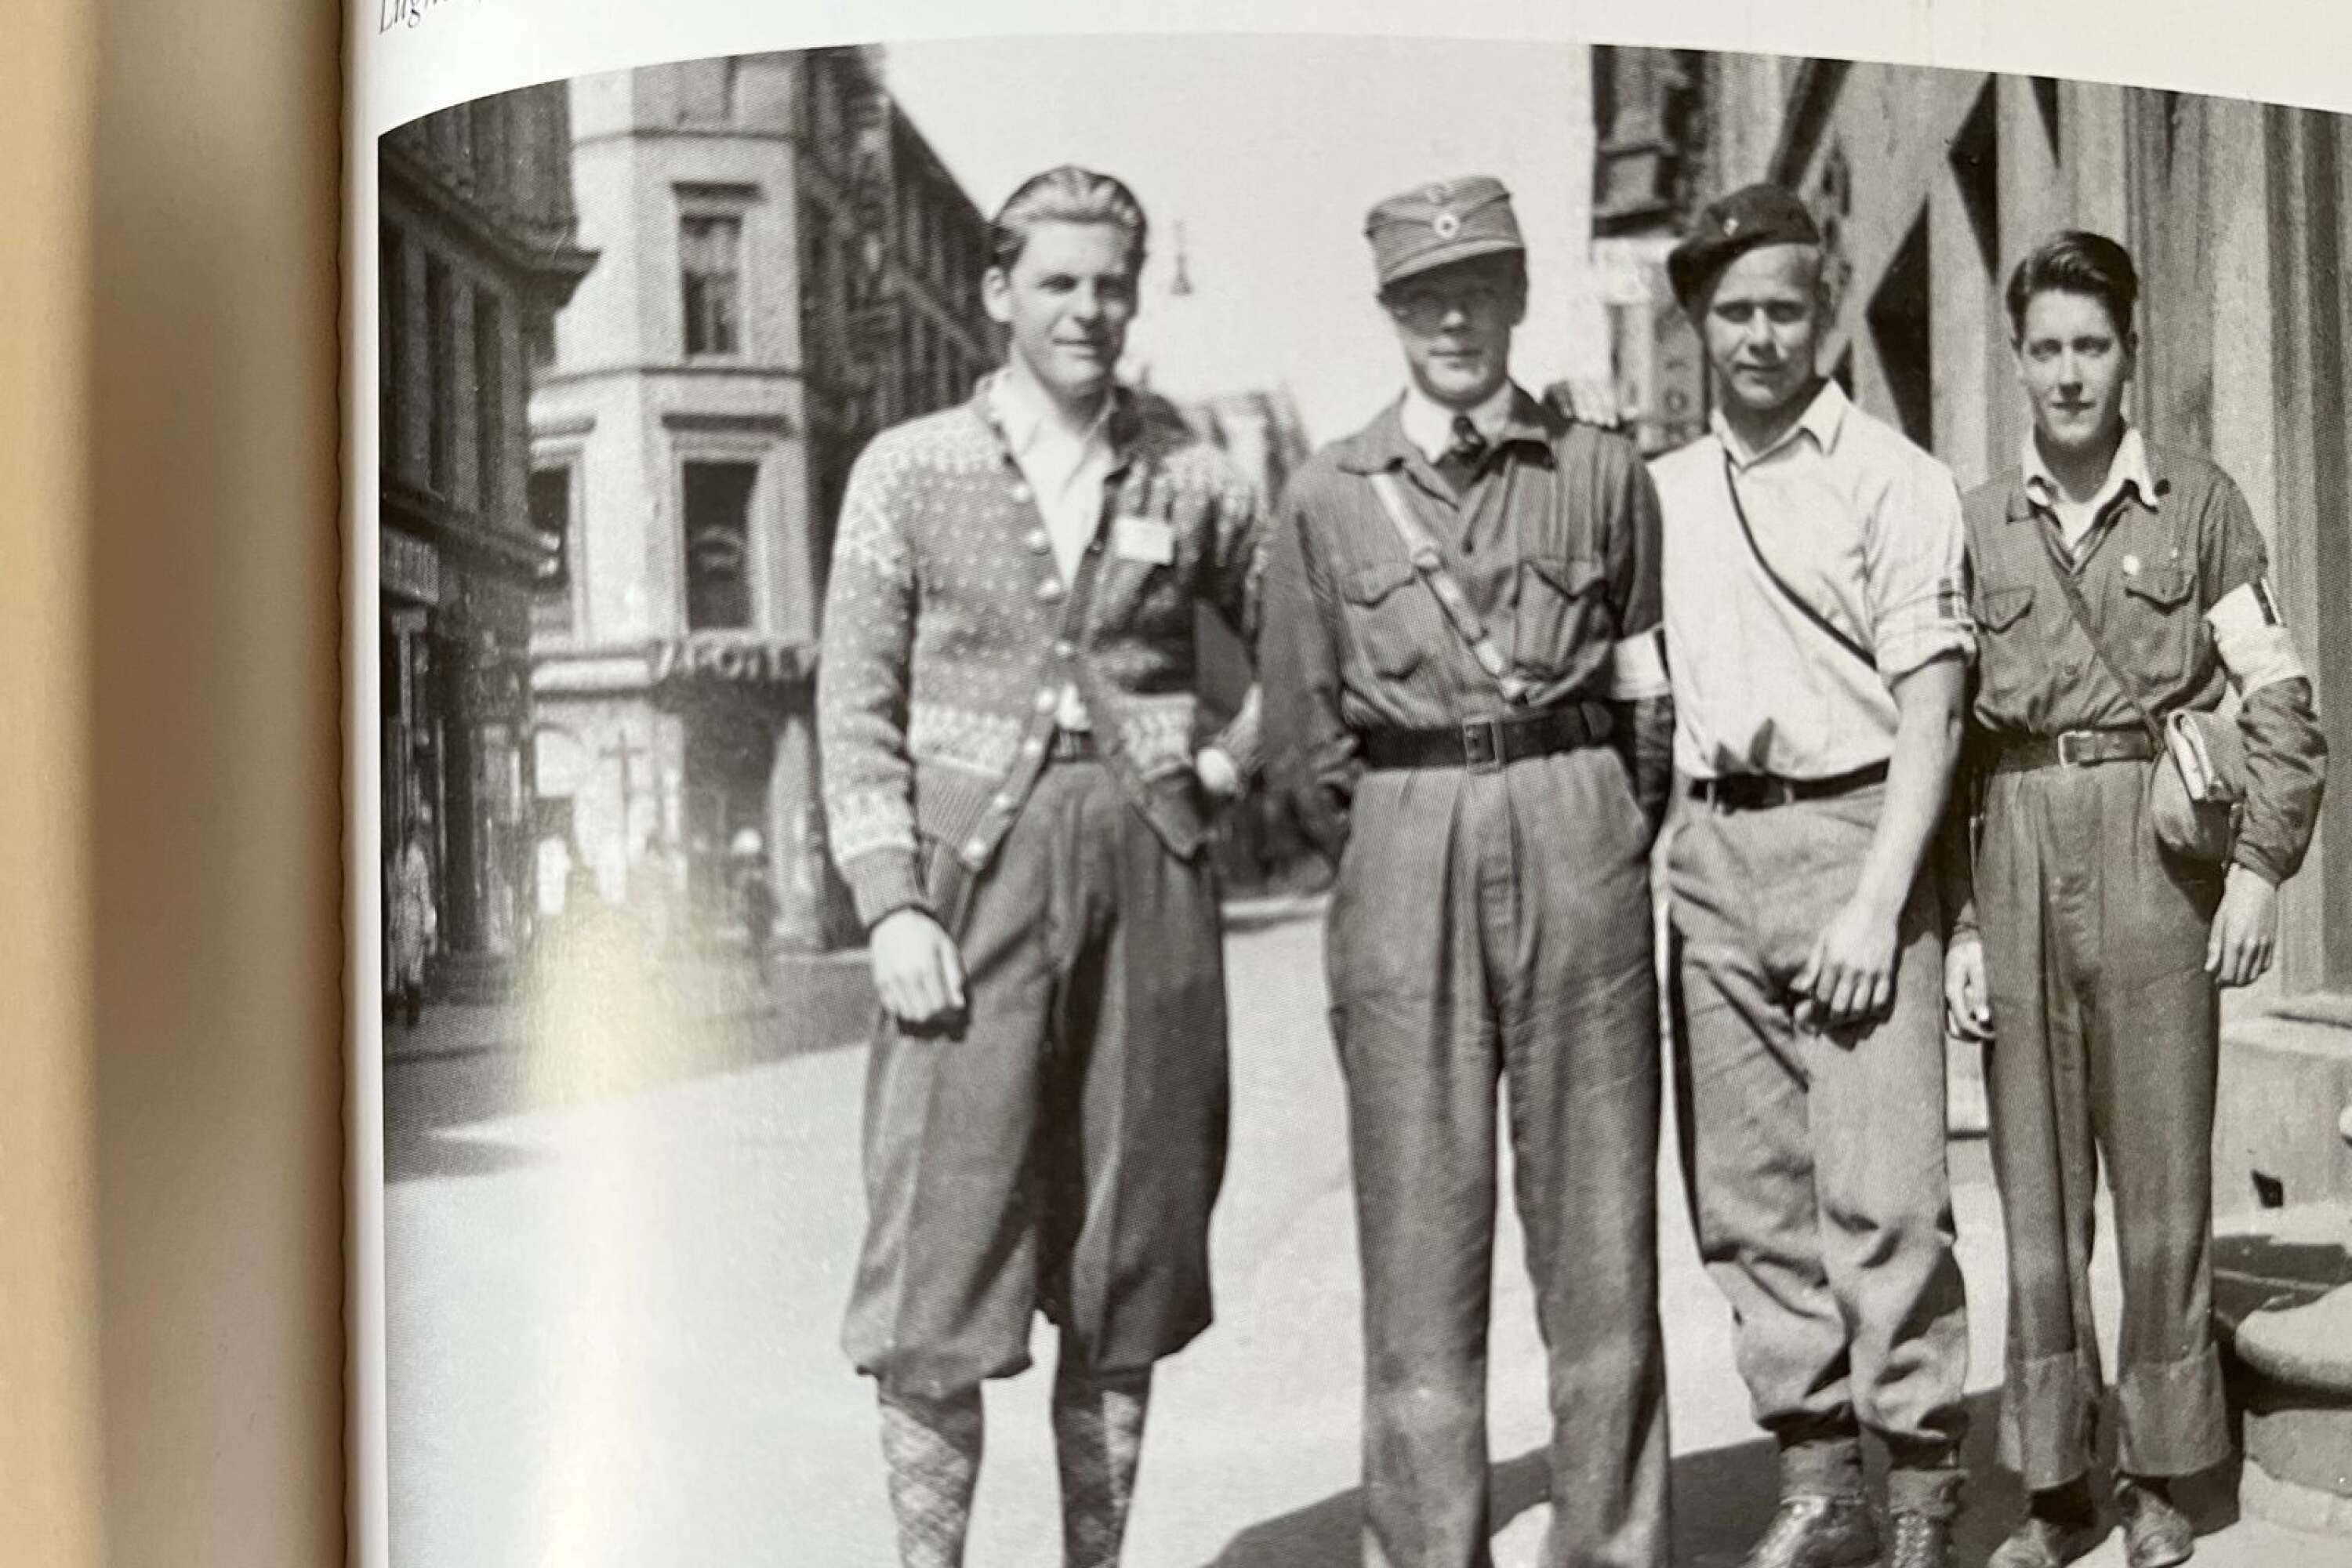 Oslo i maj 1945. Allan Mann i ljus skjorta tillsammans med vänner i Hjemmefronten. Alla bär de kungens armbindel.